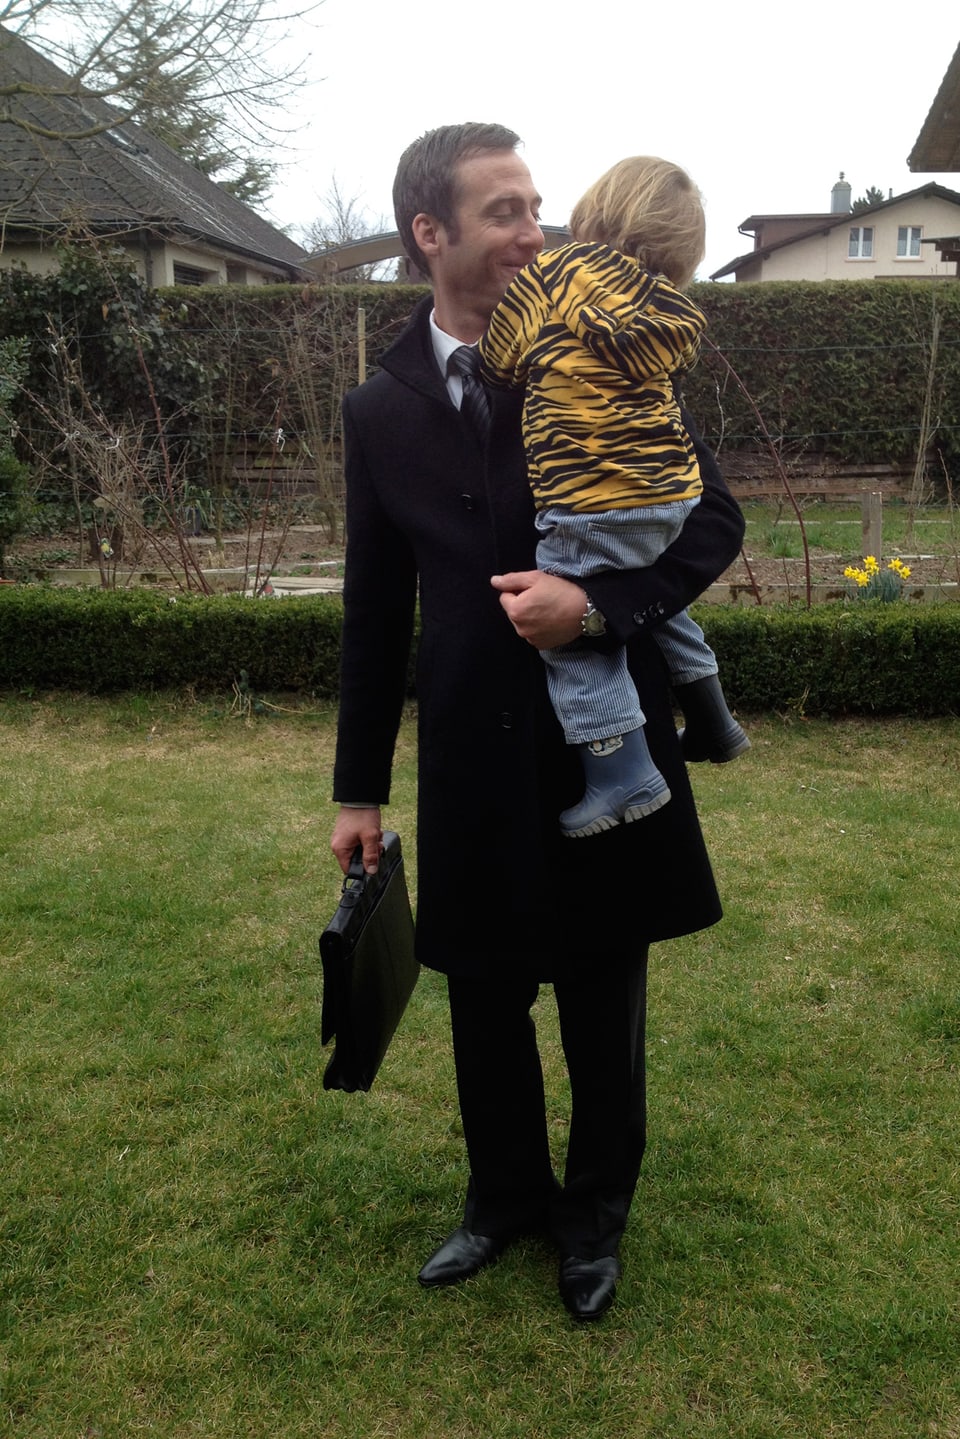 Elias Bartlome haät seinen Sohn Anatol auf seinem Arm. Sie stehen im Garten.